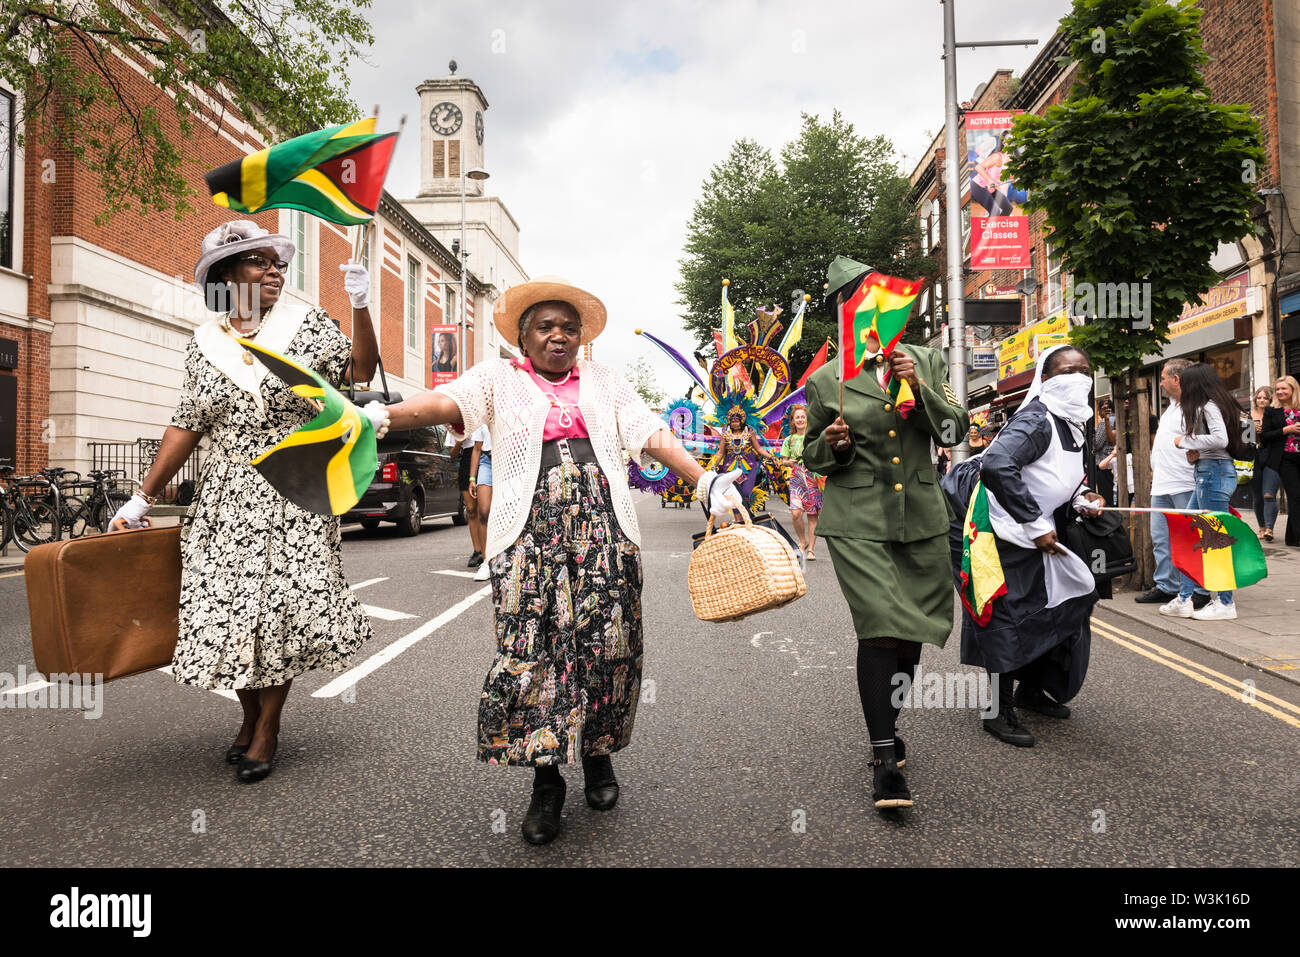 Des femmes habillées à se souvenir des contributions du Windrush generation prenant part à Acton défilé du Carnaval 2019. Acton Town Hall en arrière-plan. Banque D'Images